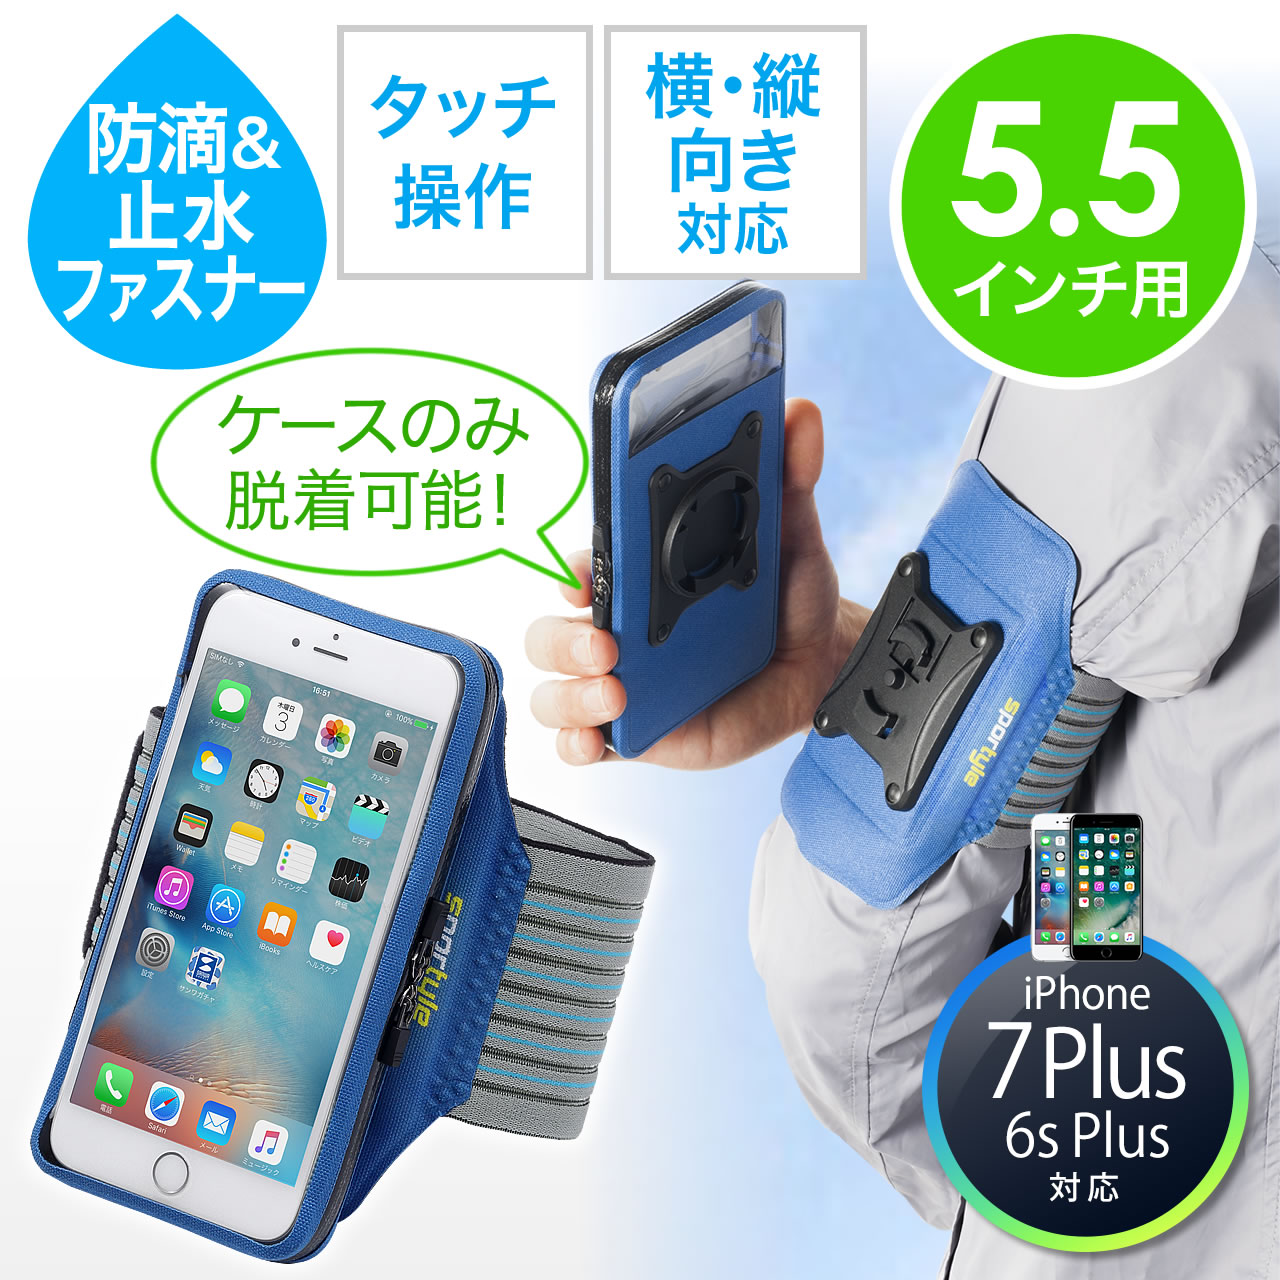 アームバンドケース 5 5インチスマホ Iphone 7 Plus 6s Plus対応 防滴 止水ファスナー 縦 横 付け外し対応 ブルー 0 Spc015blの販売商品 通販ならサンワダイレクト